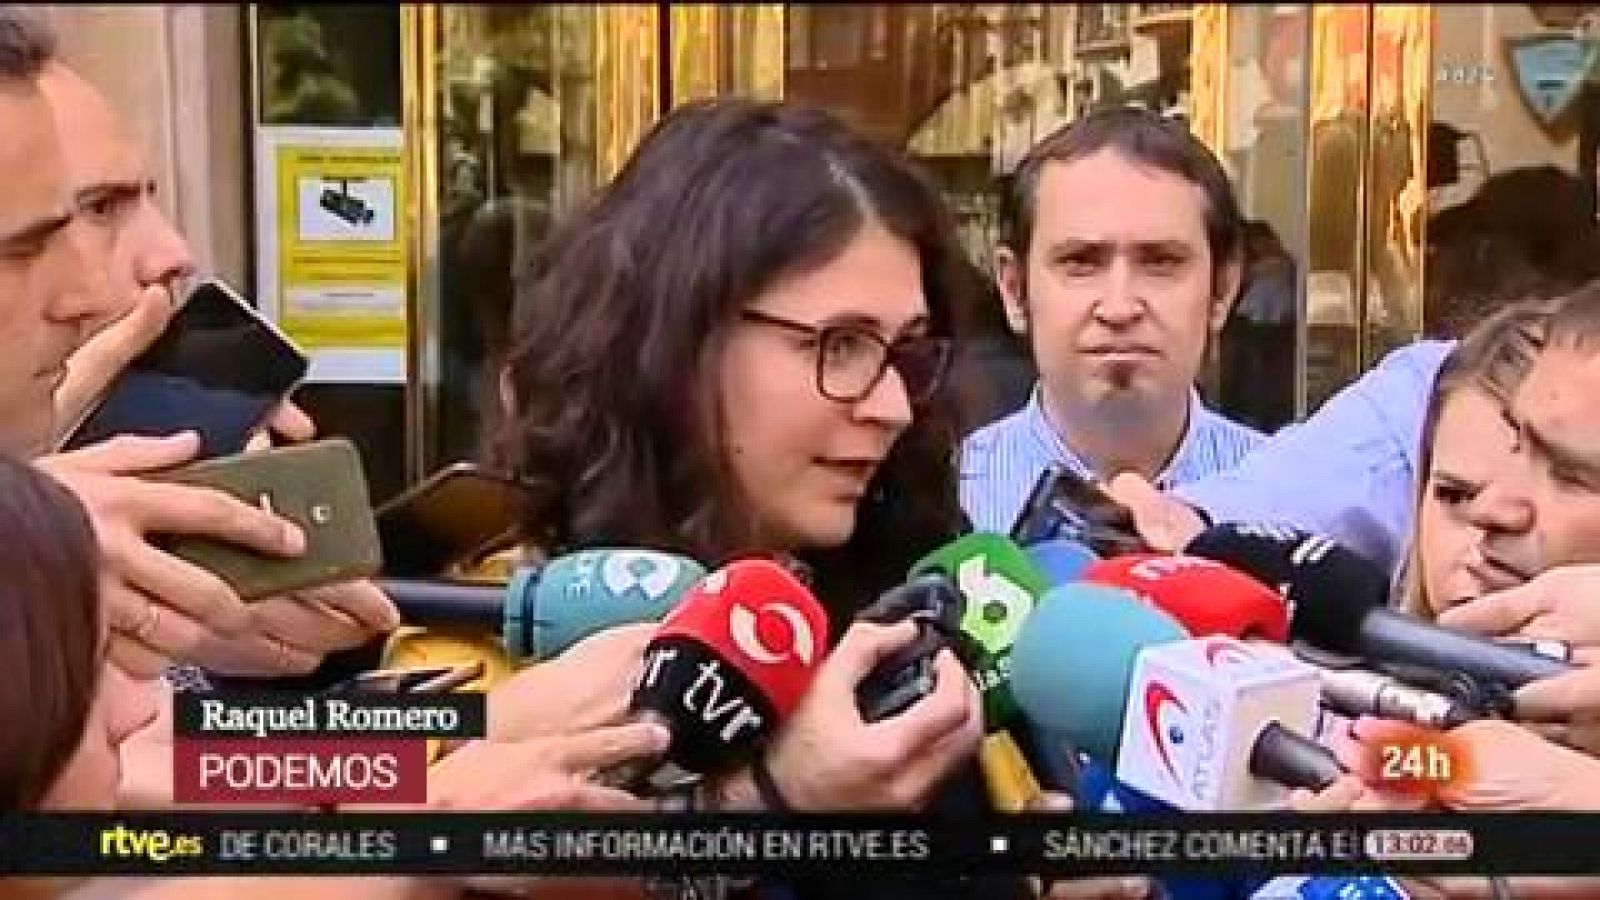 PSOE y Podemos rompen las negociaciones en La Rioja